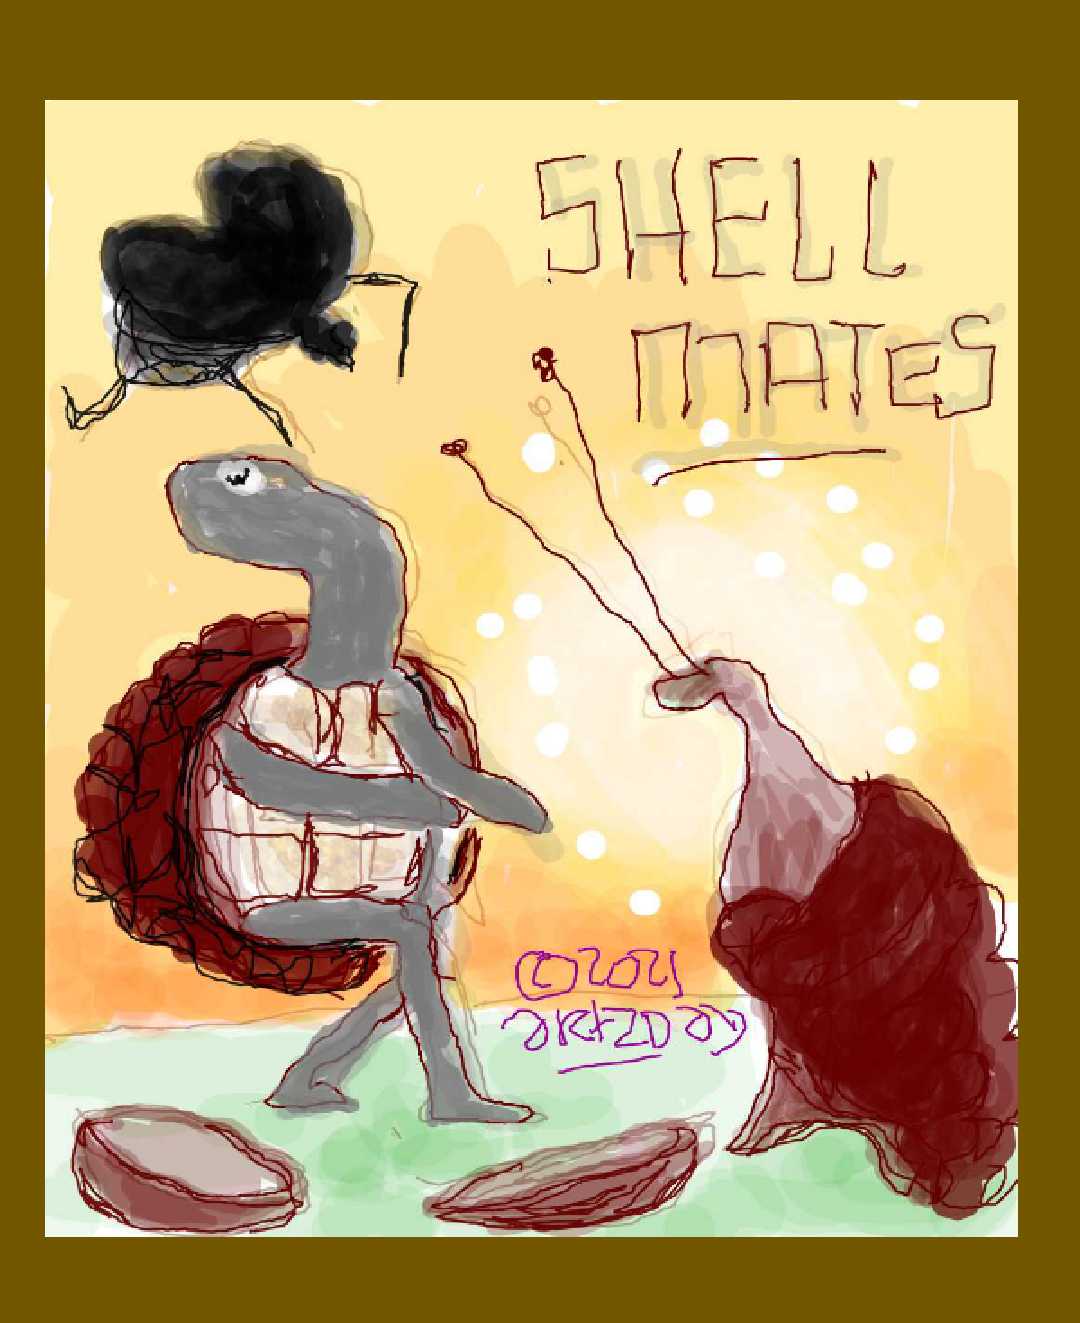 meet the shell mates